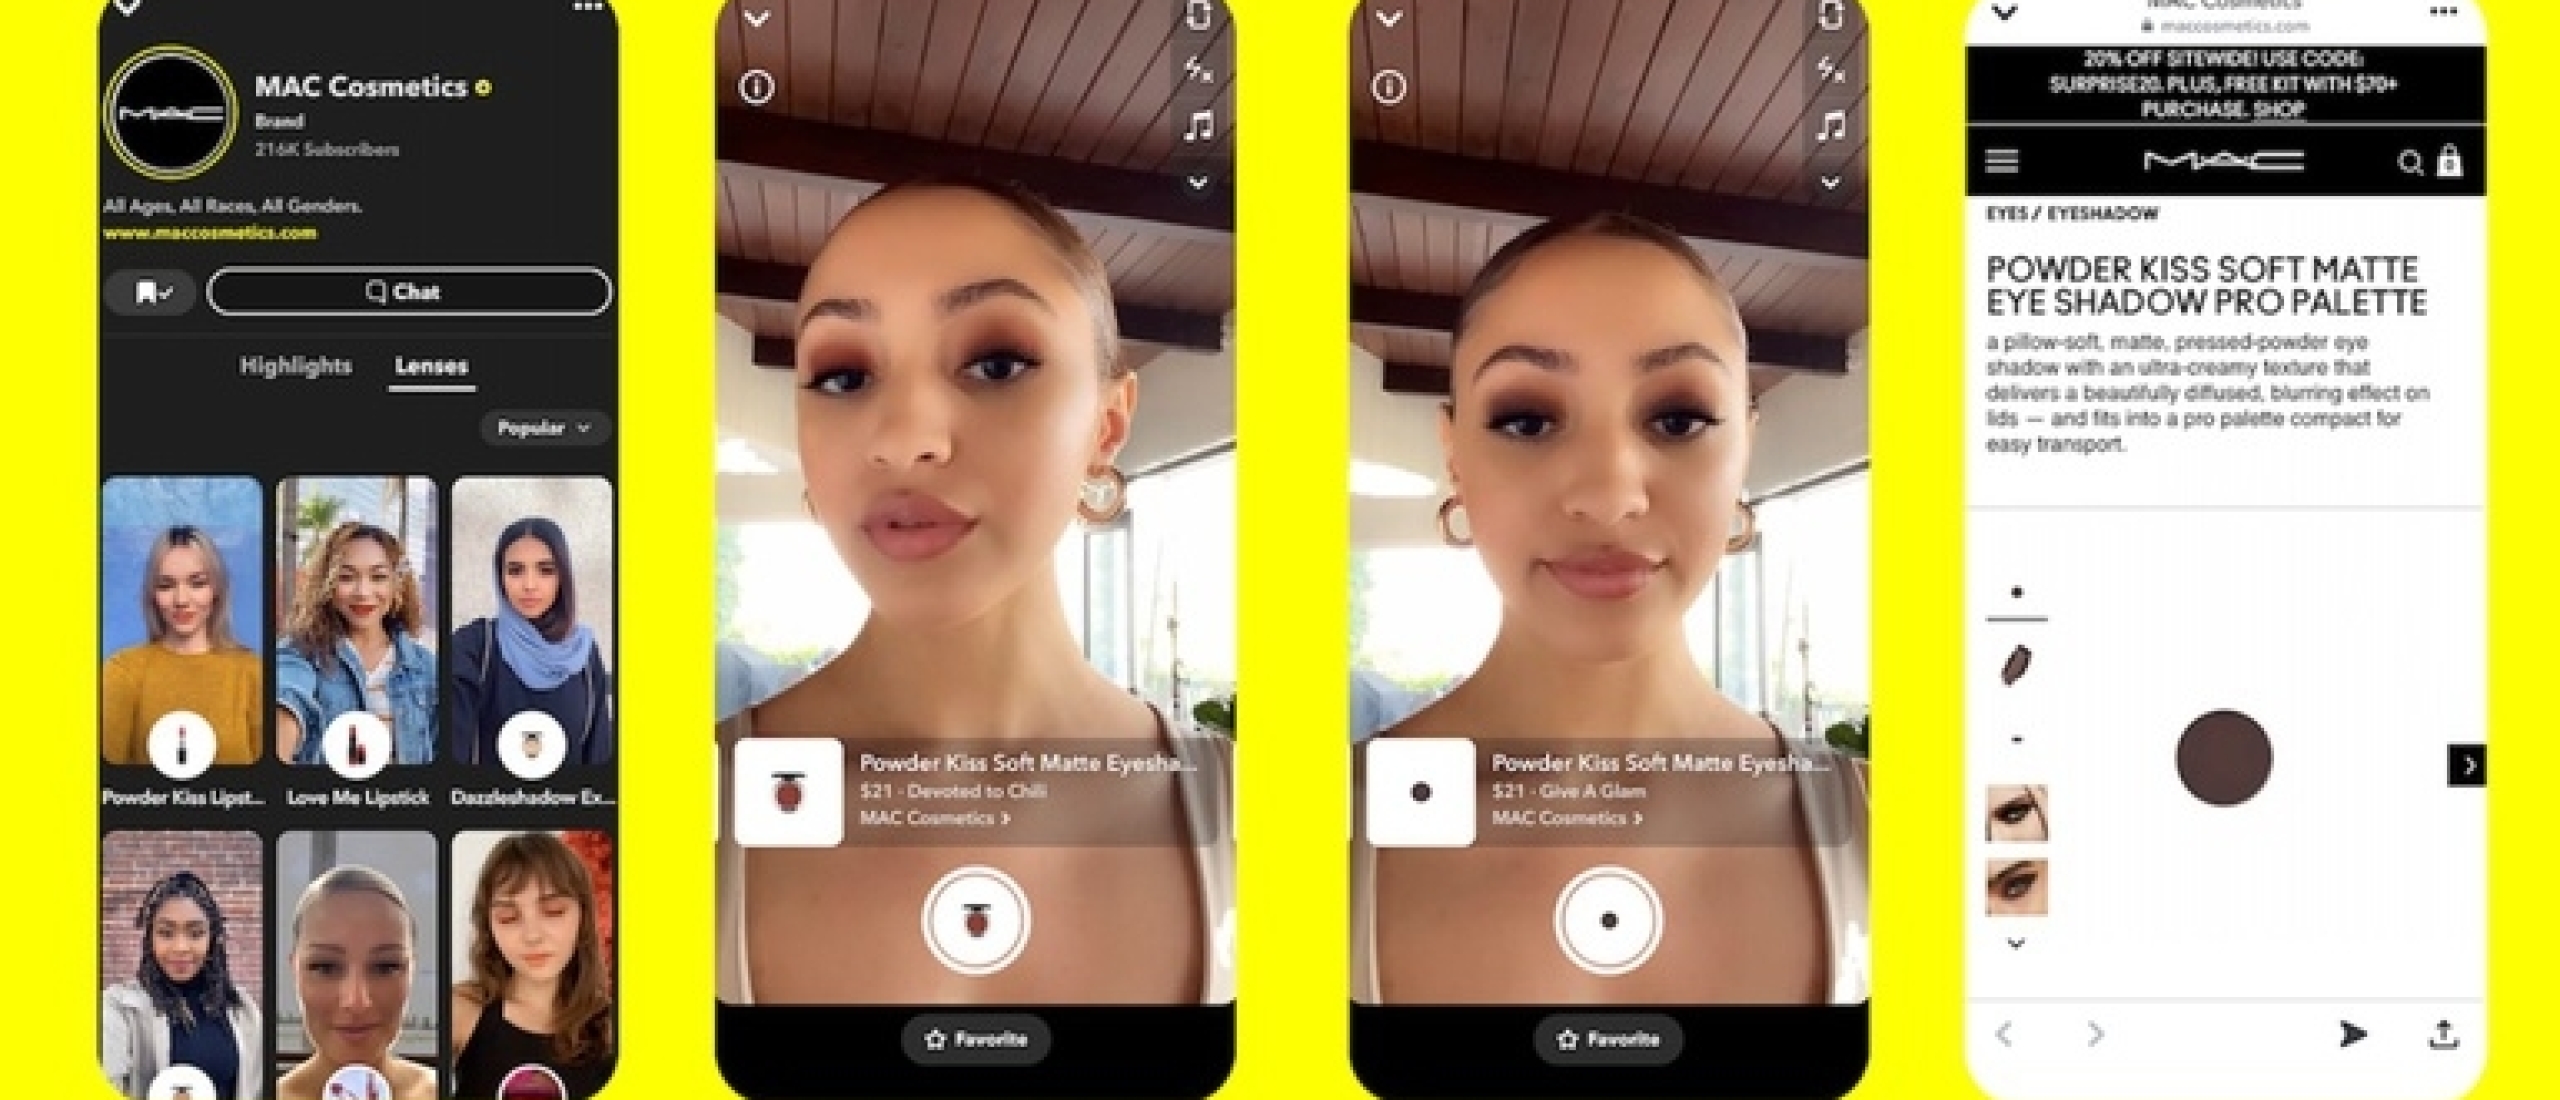 AR shopping upgrade van Snapchat wijst op toekomst van social commerce